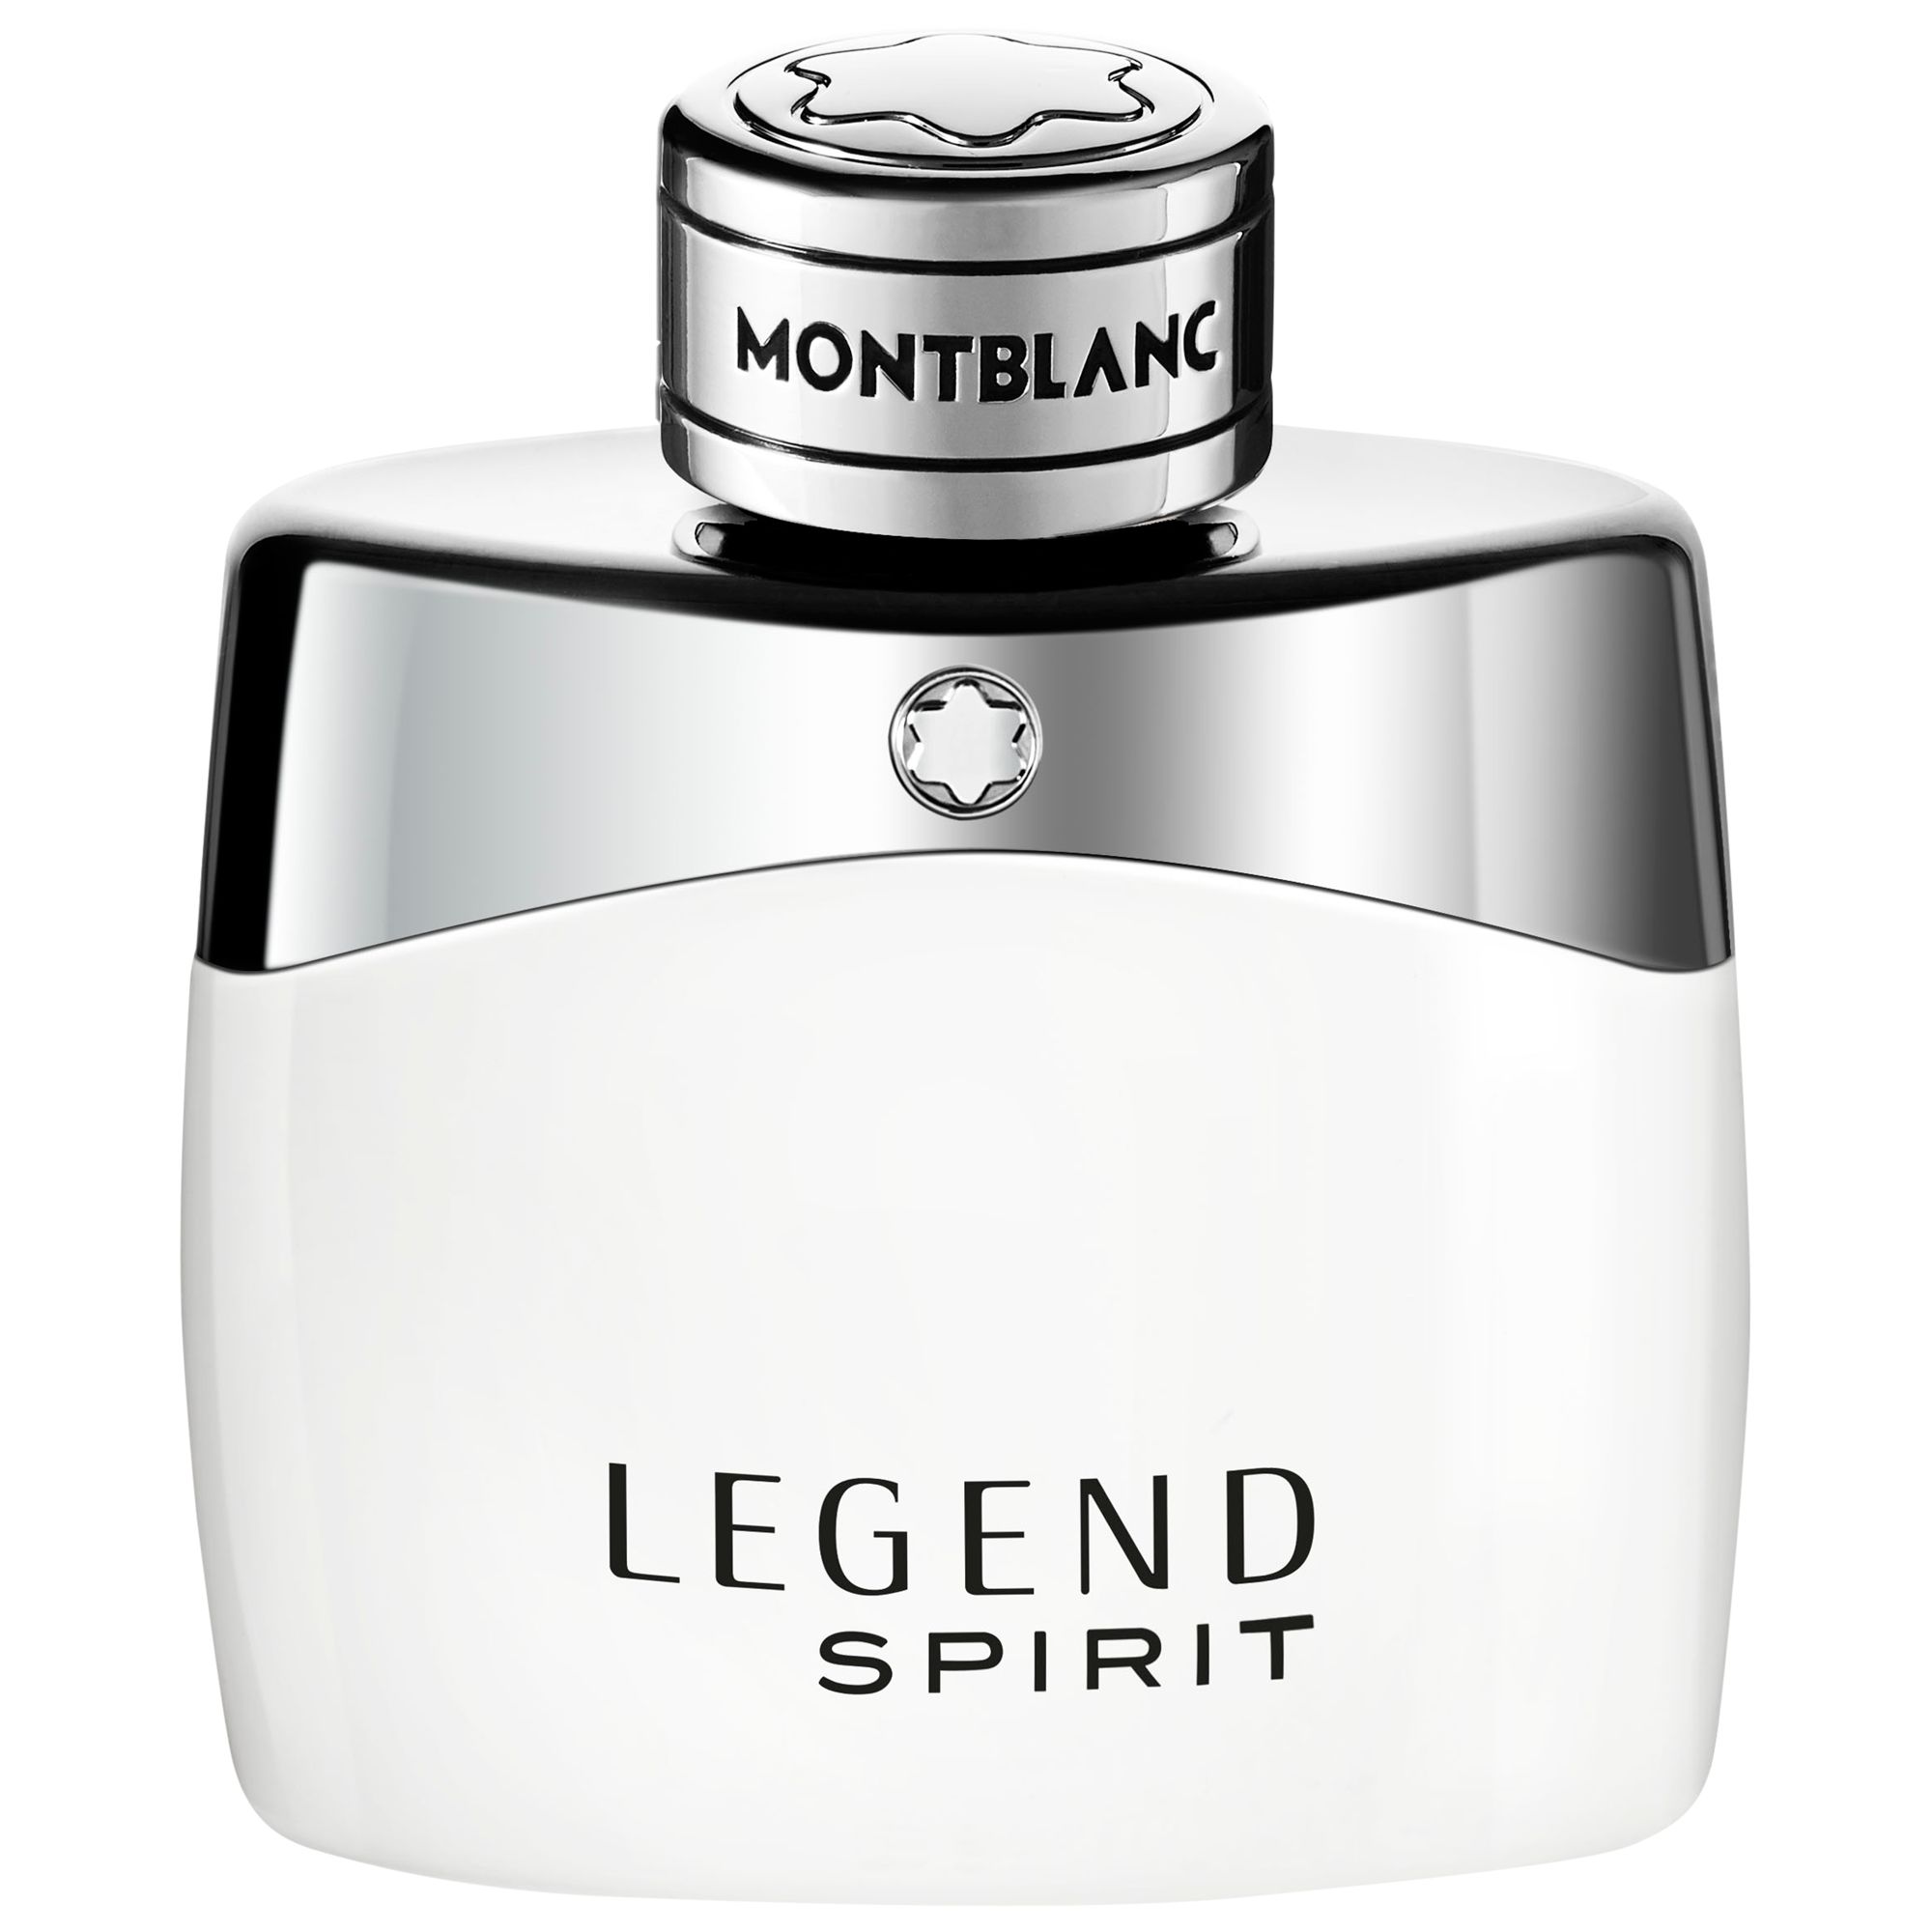 Montblanc Legend Spirit Eau de Toilette, 50ml